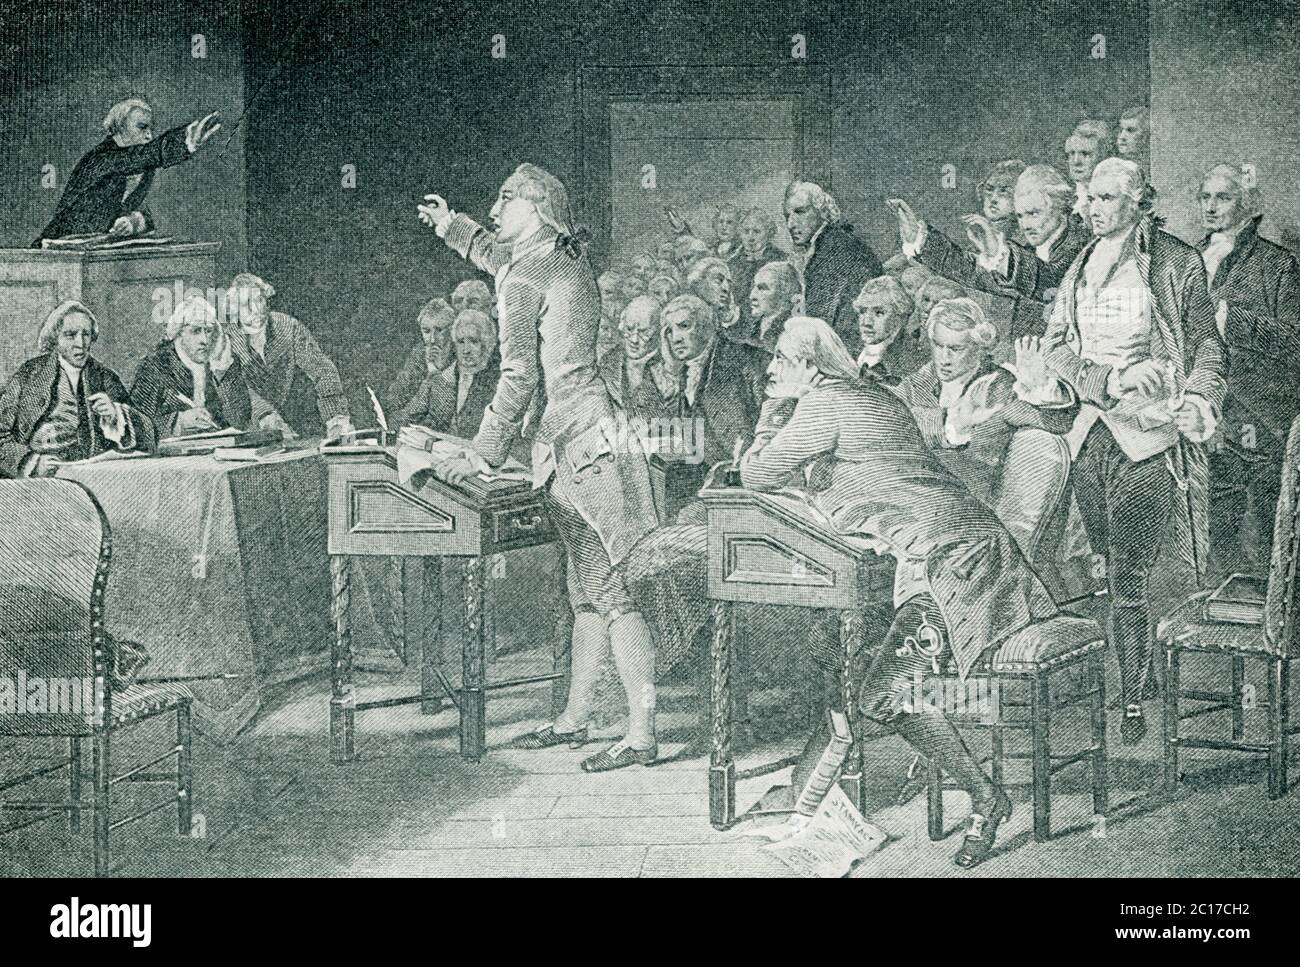 Dans cette illustration, Patrick Henry s'adresse à la Convention de Virginie. Patrick Henry (1736–1799) était un patriote et orateur américain. Il a encouragé la révolte coloniale dans le Sud par ses discours et est bien connu pour ses paroles, « Donnez-moi la liberté, ou donnez-moi la mort ! » Banque D'Images